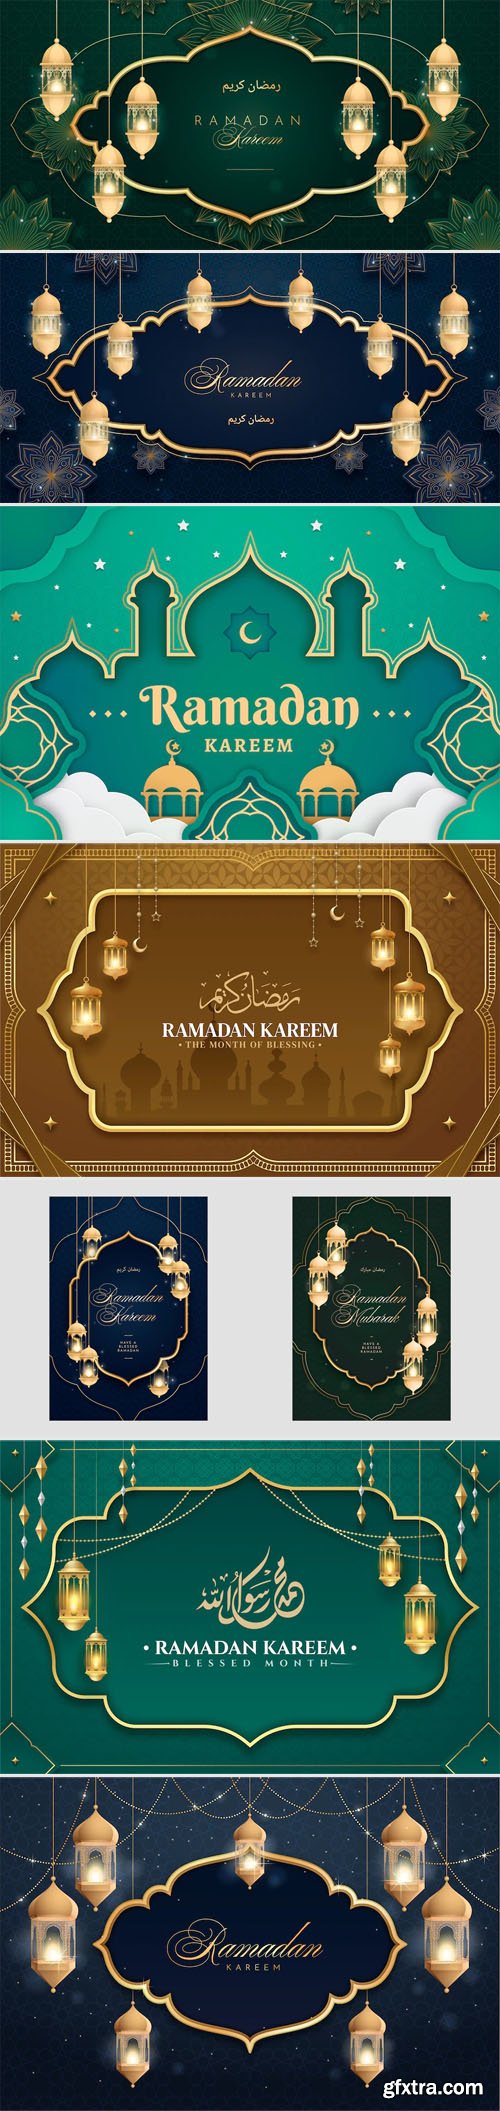 Ramadan Kareem - Beautiful 15 Vector Templates Collection